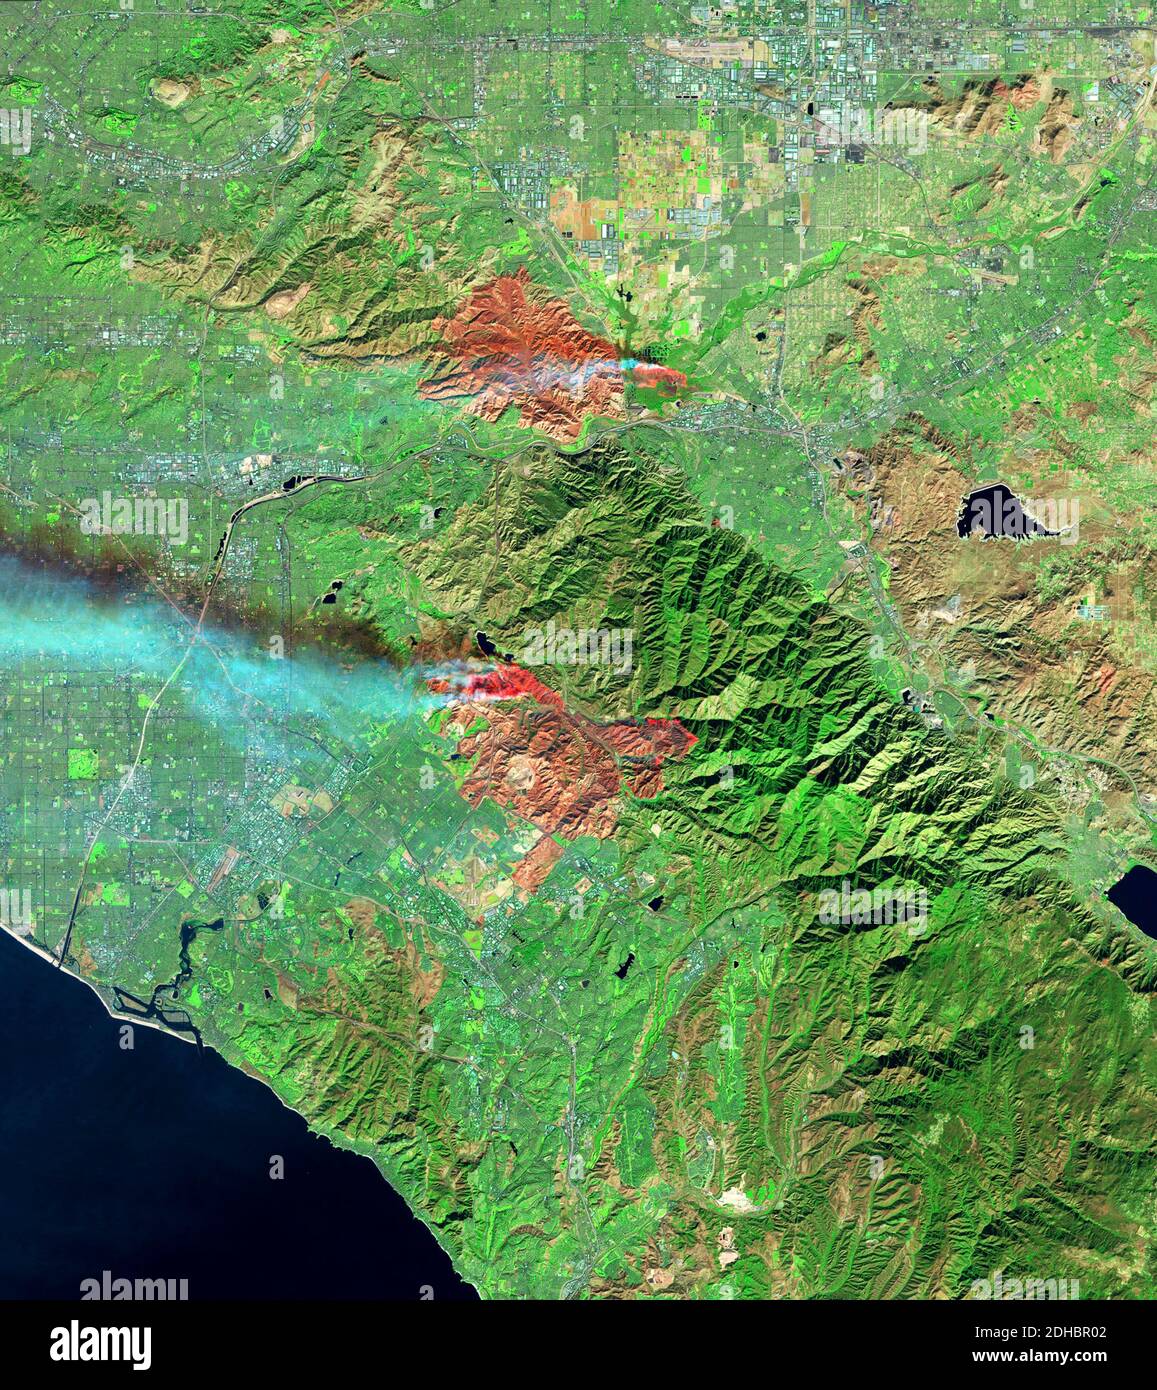 Rauchwolken steigen aus den Waldbränden des Flughafens und des Silverado Canyon auf dem Satelliten Landsat 8 am 3. Dezember 2020 in der Nähe von Los Angeles, Kalifornien. Stockfoto